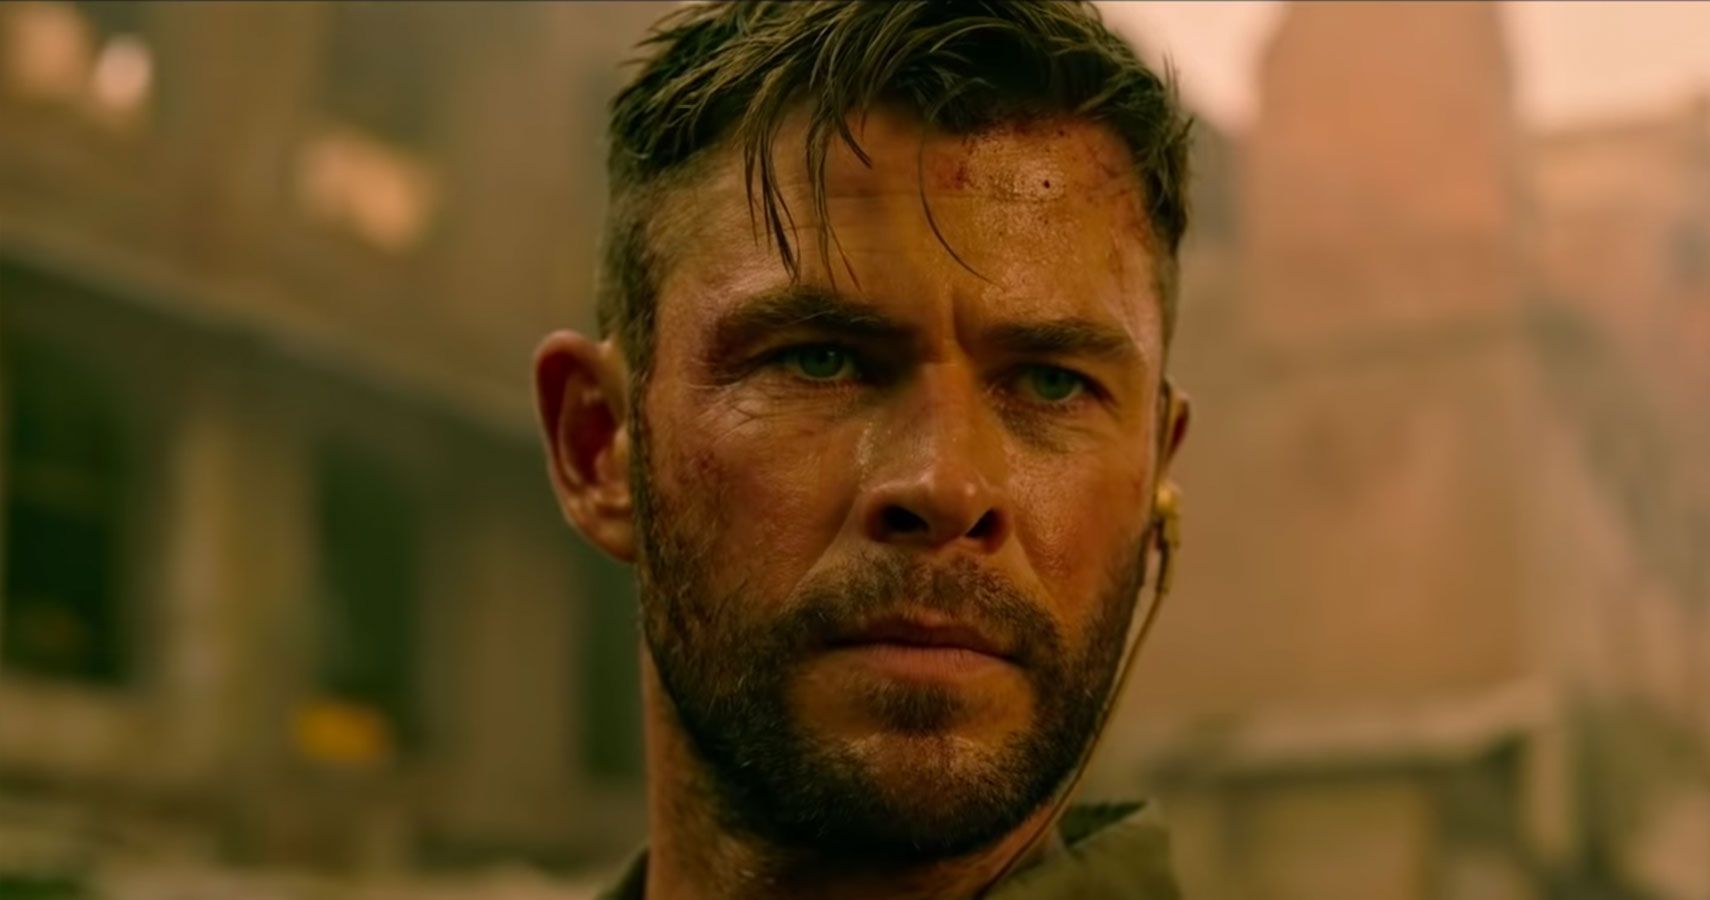 Chris Hemsworth provoca a sequência do filme após o enorme sucesso de Extraction